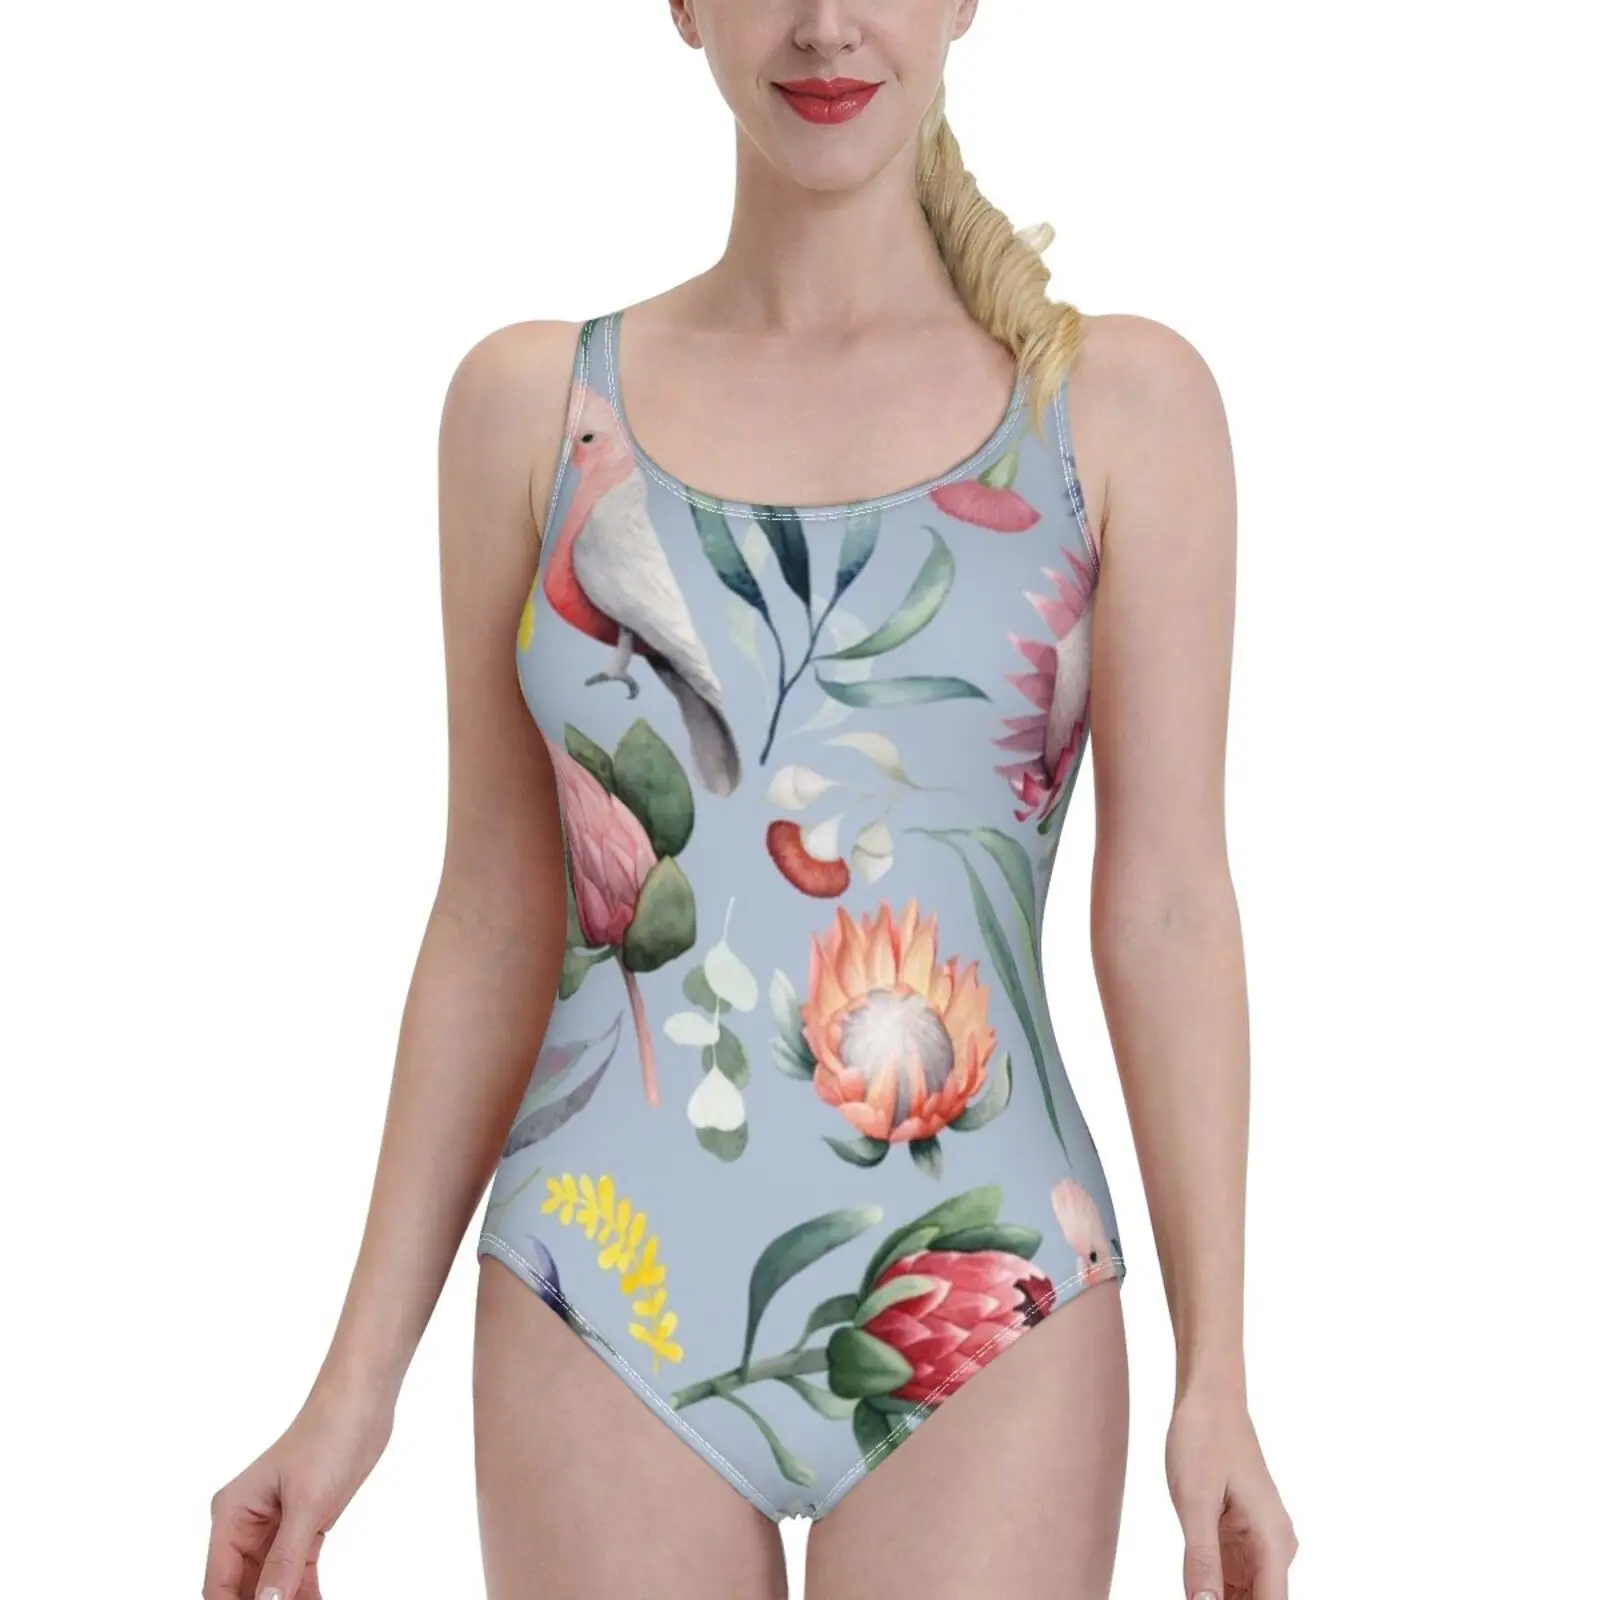 

Сексуальная одежда для плавания с принтом ботаника австралийского, женский слитный купальник, Женский Монокини, купальный костюм, одежда д...